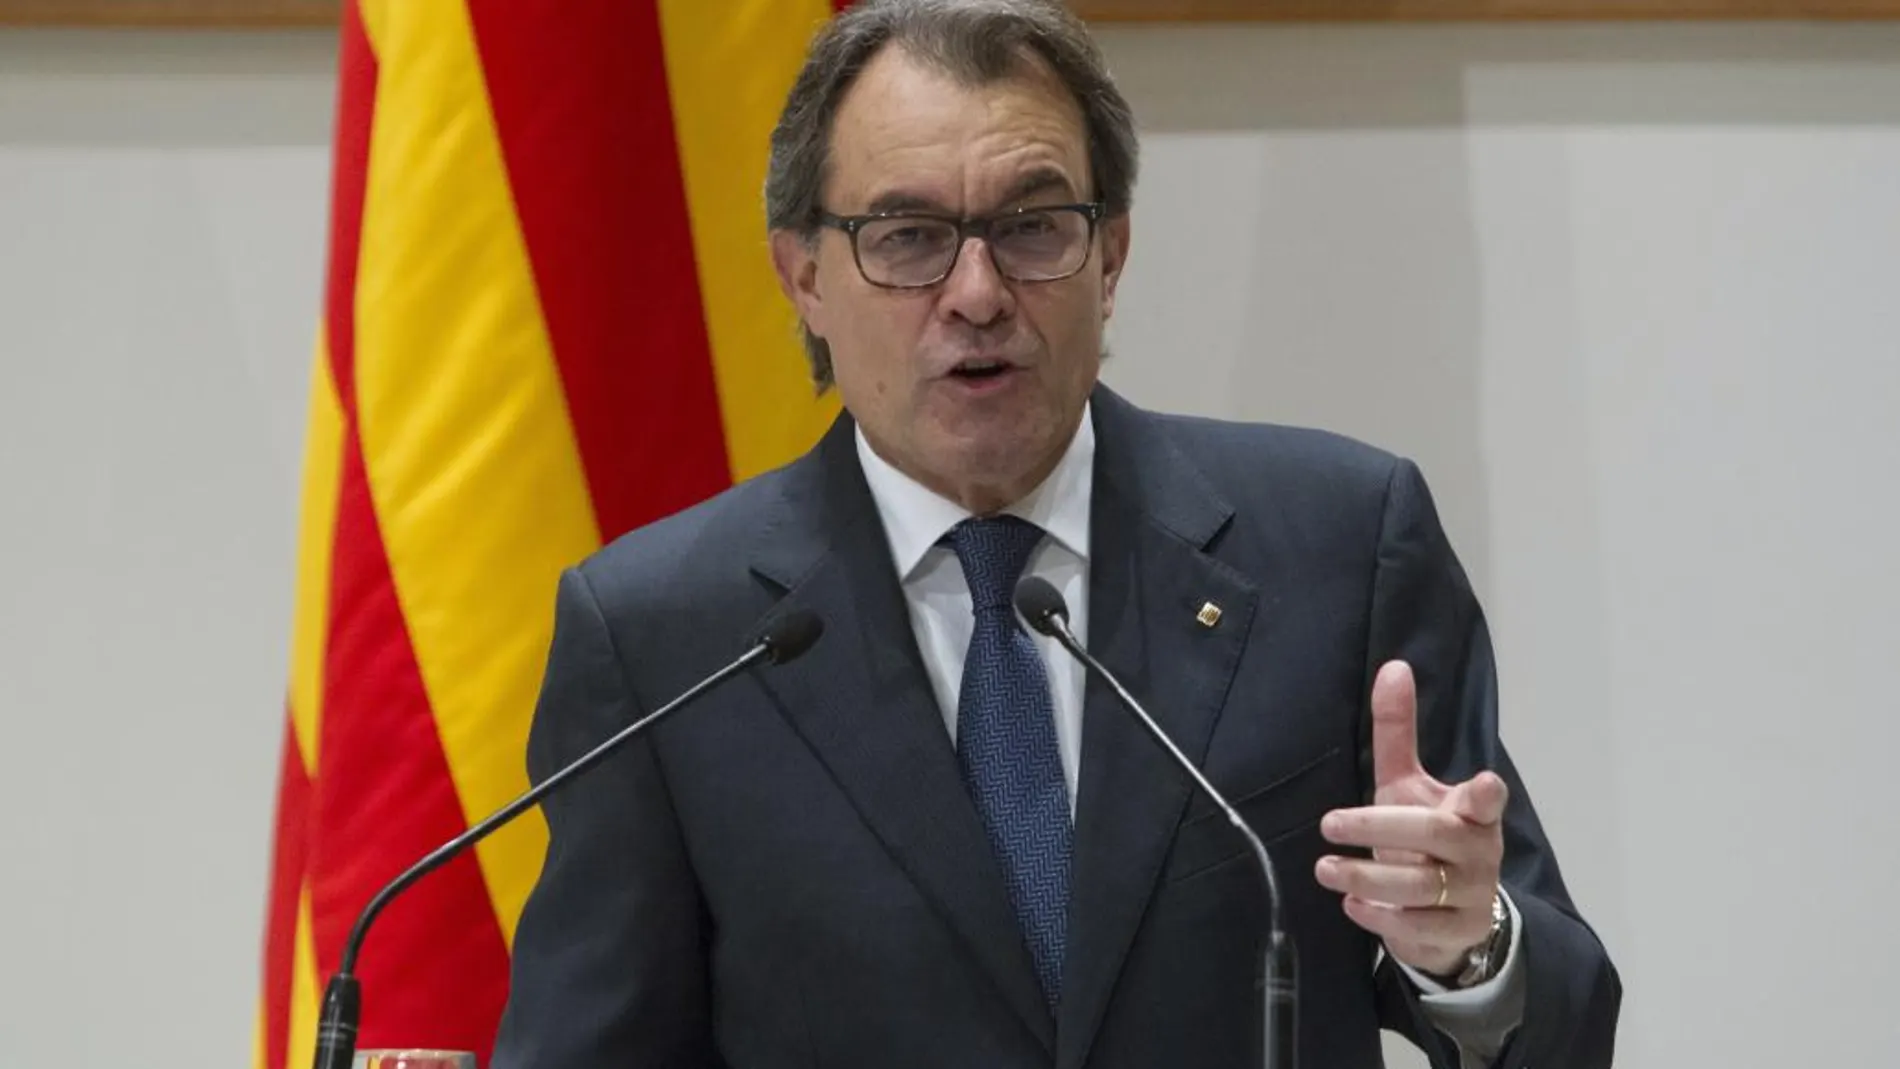 El presidente catalán en funciones, Artur Mas, durante la rueda de prensa que ofreció ayer en el Palau de la Generalitat